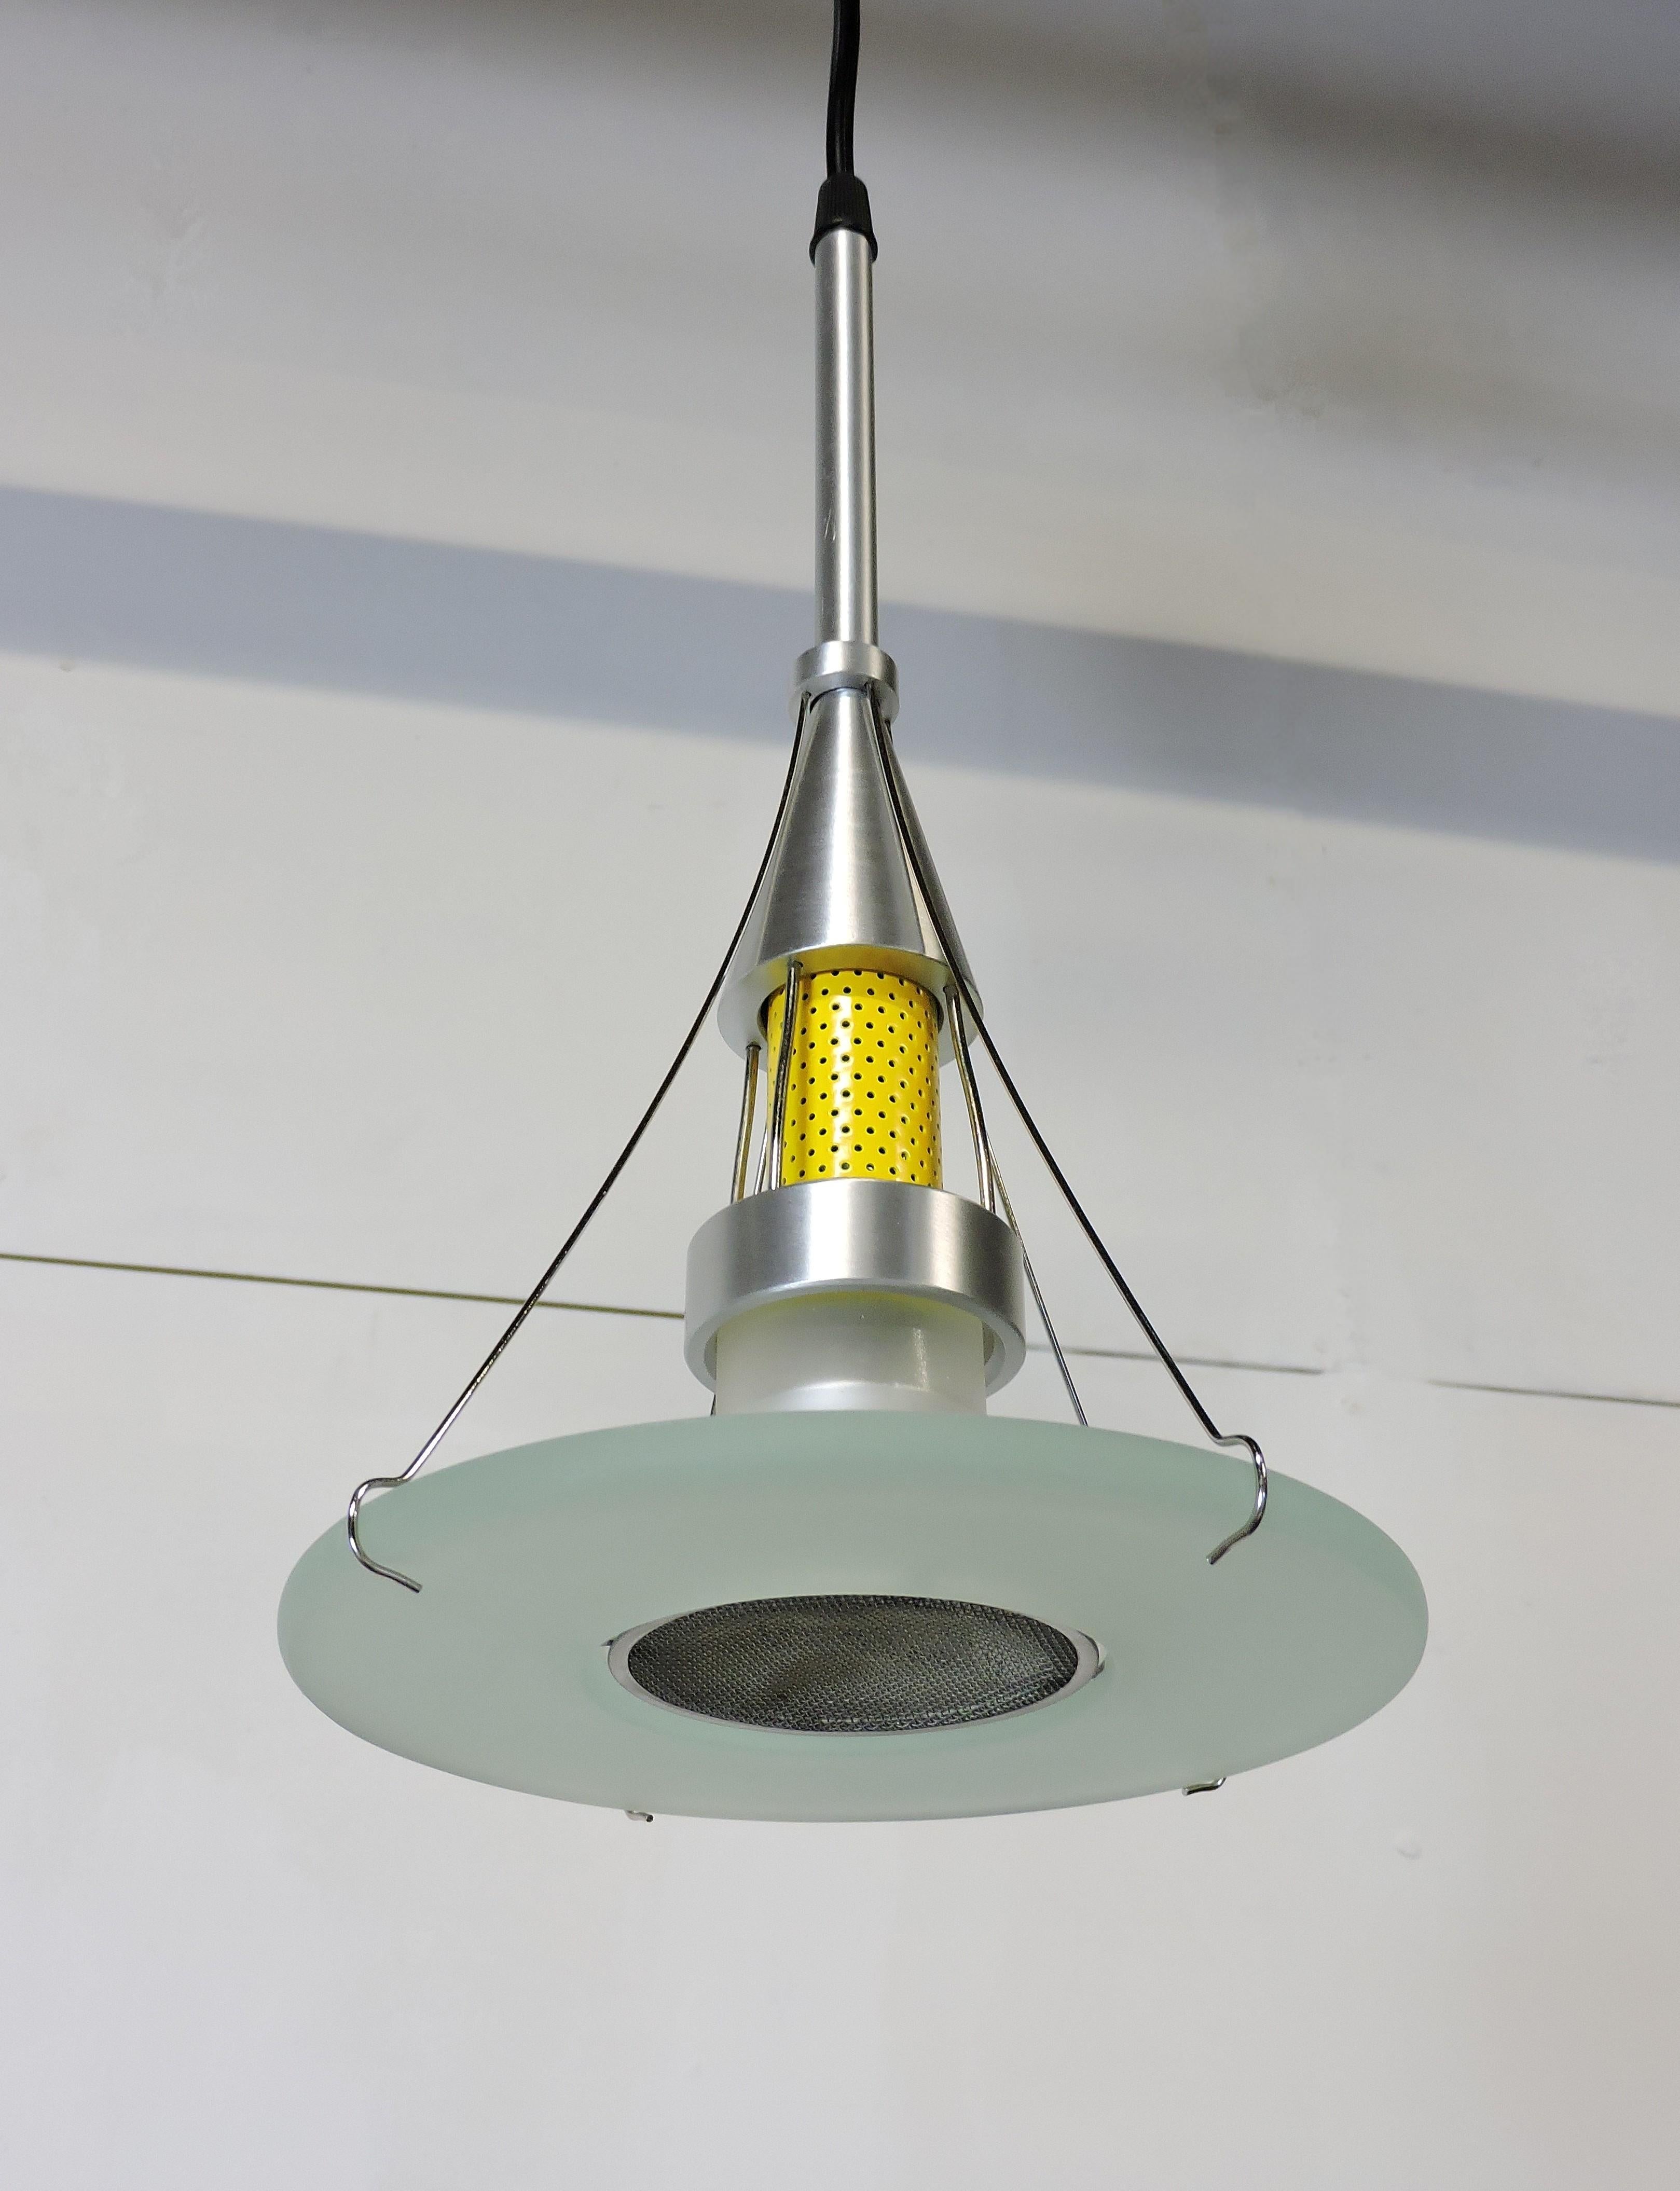 Très belle lampe suspendue de style industriel, conçue à l'origine par Robert Sonneman pour George Kovacs en 1990 et fabriquée en 2005 par Robert Sonneman Contemporary Visions. Ce luminaire est composé de verre dépoli, d'aluminium brossé et d'acier